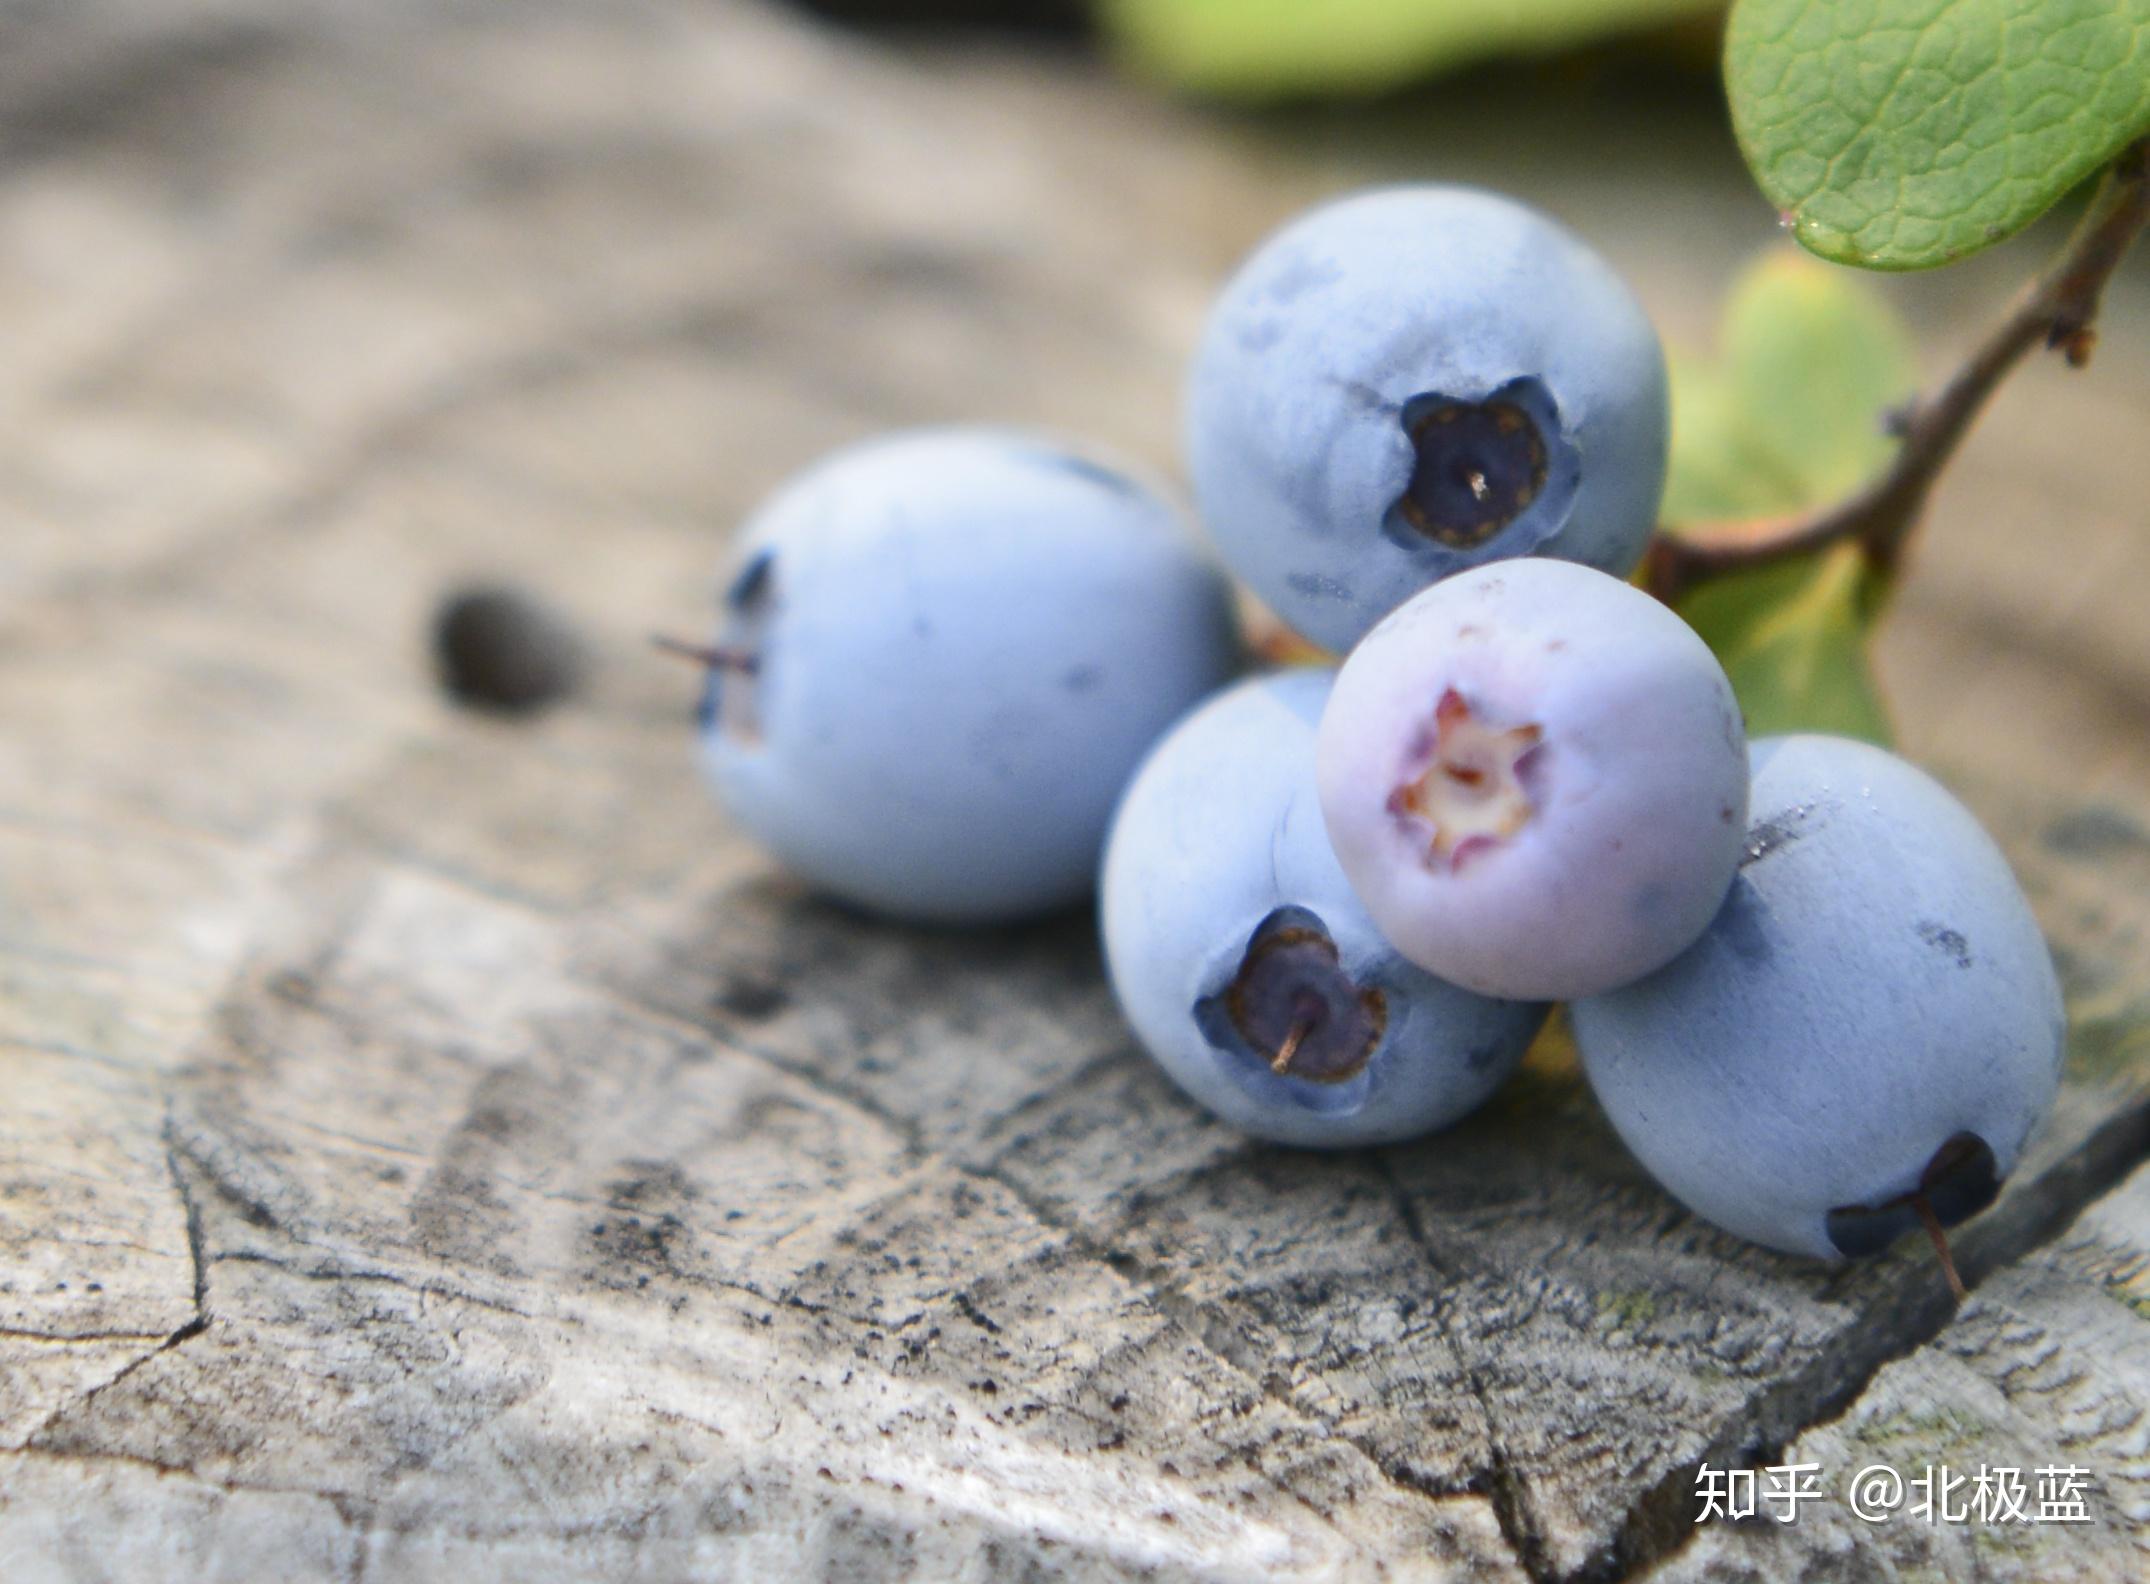 爱厨房的幸福之味: 蓝莓优格麦芬 Blueberry Yogurt Muffins